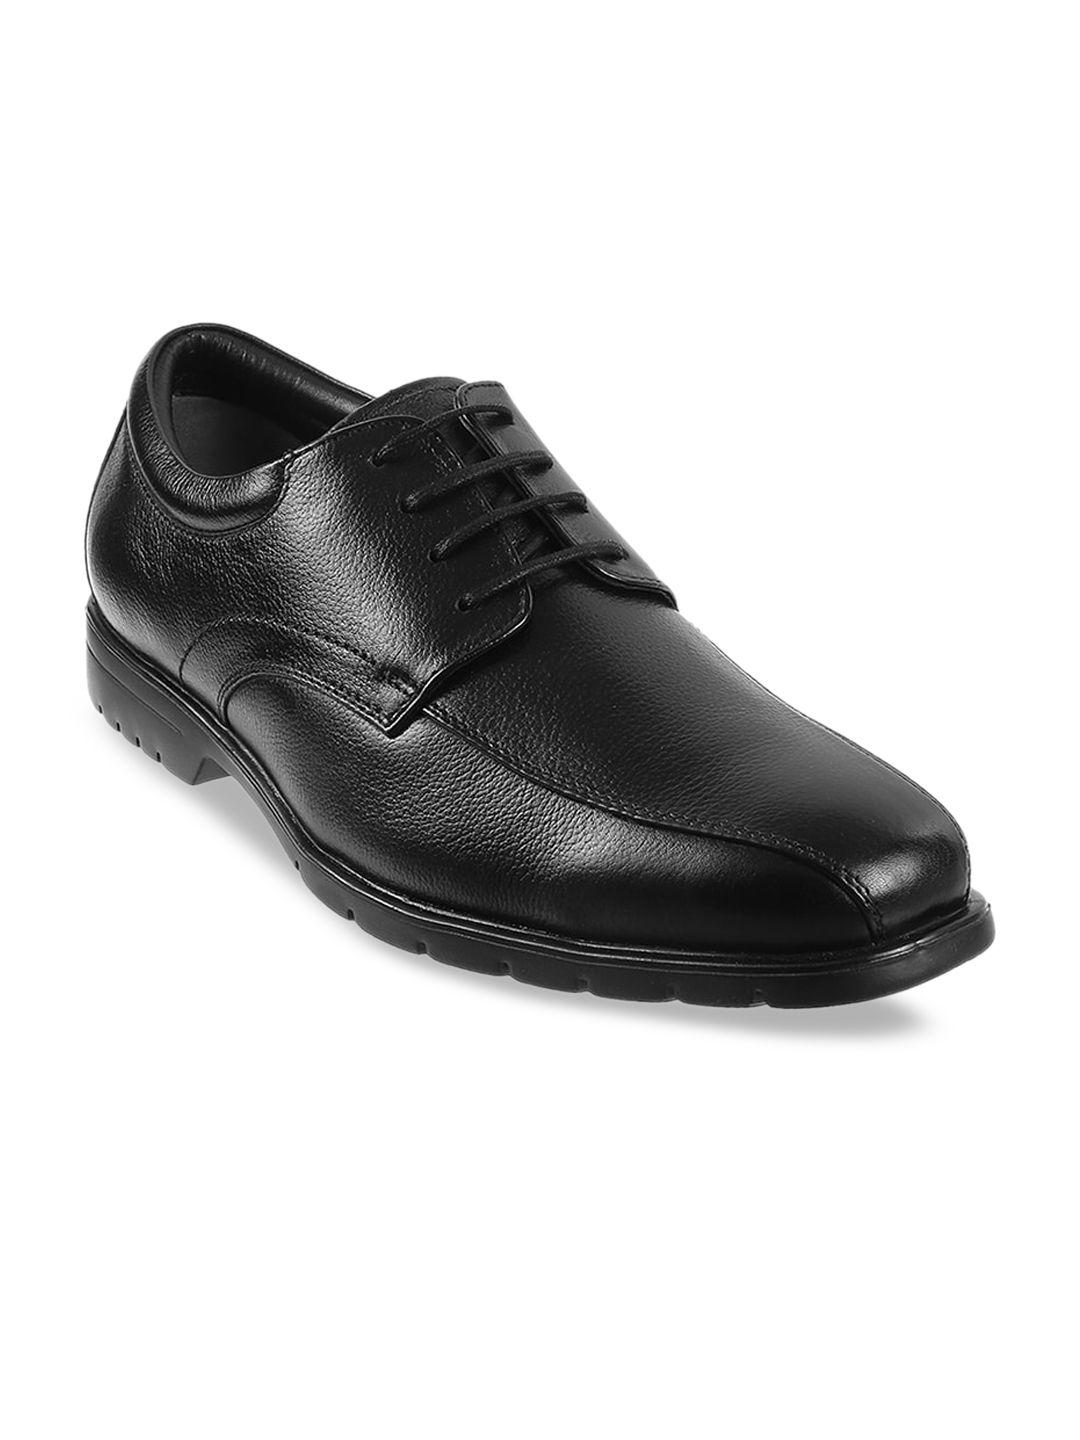 j.fontini men black solid leather formal derbys